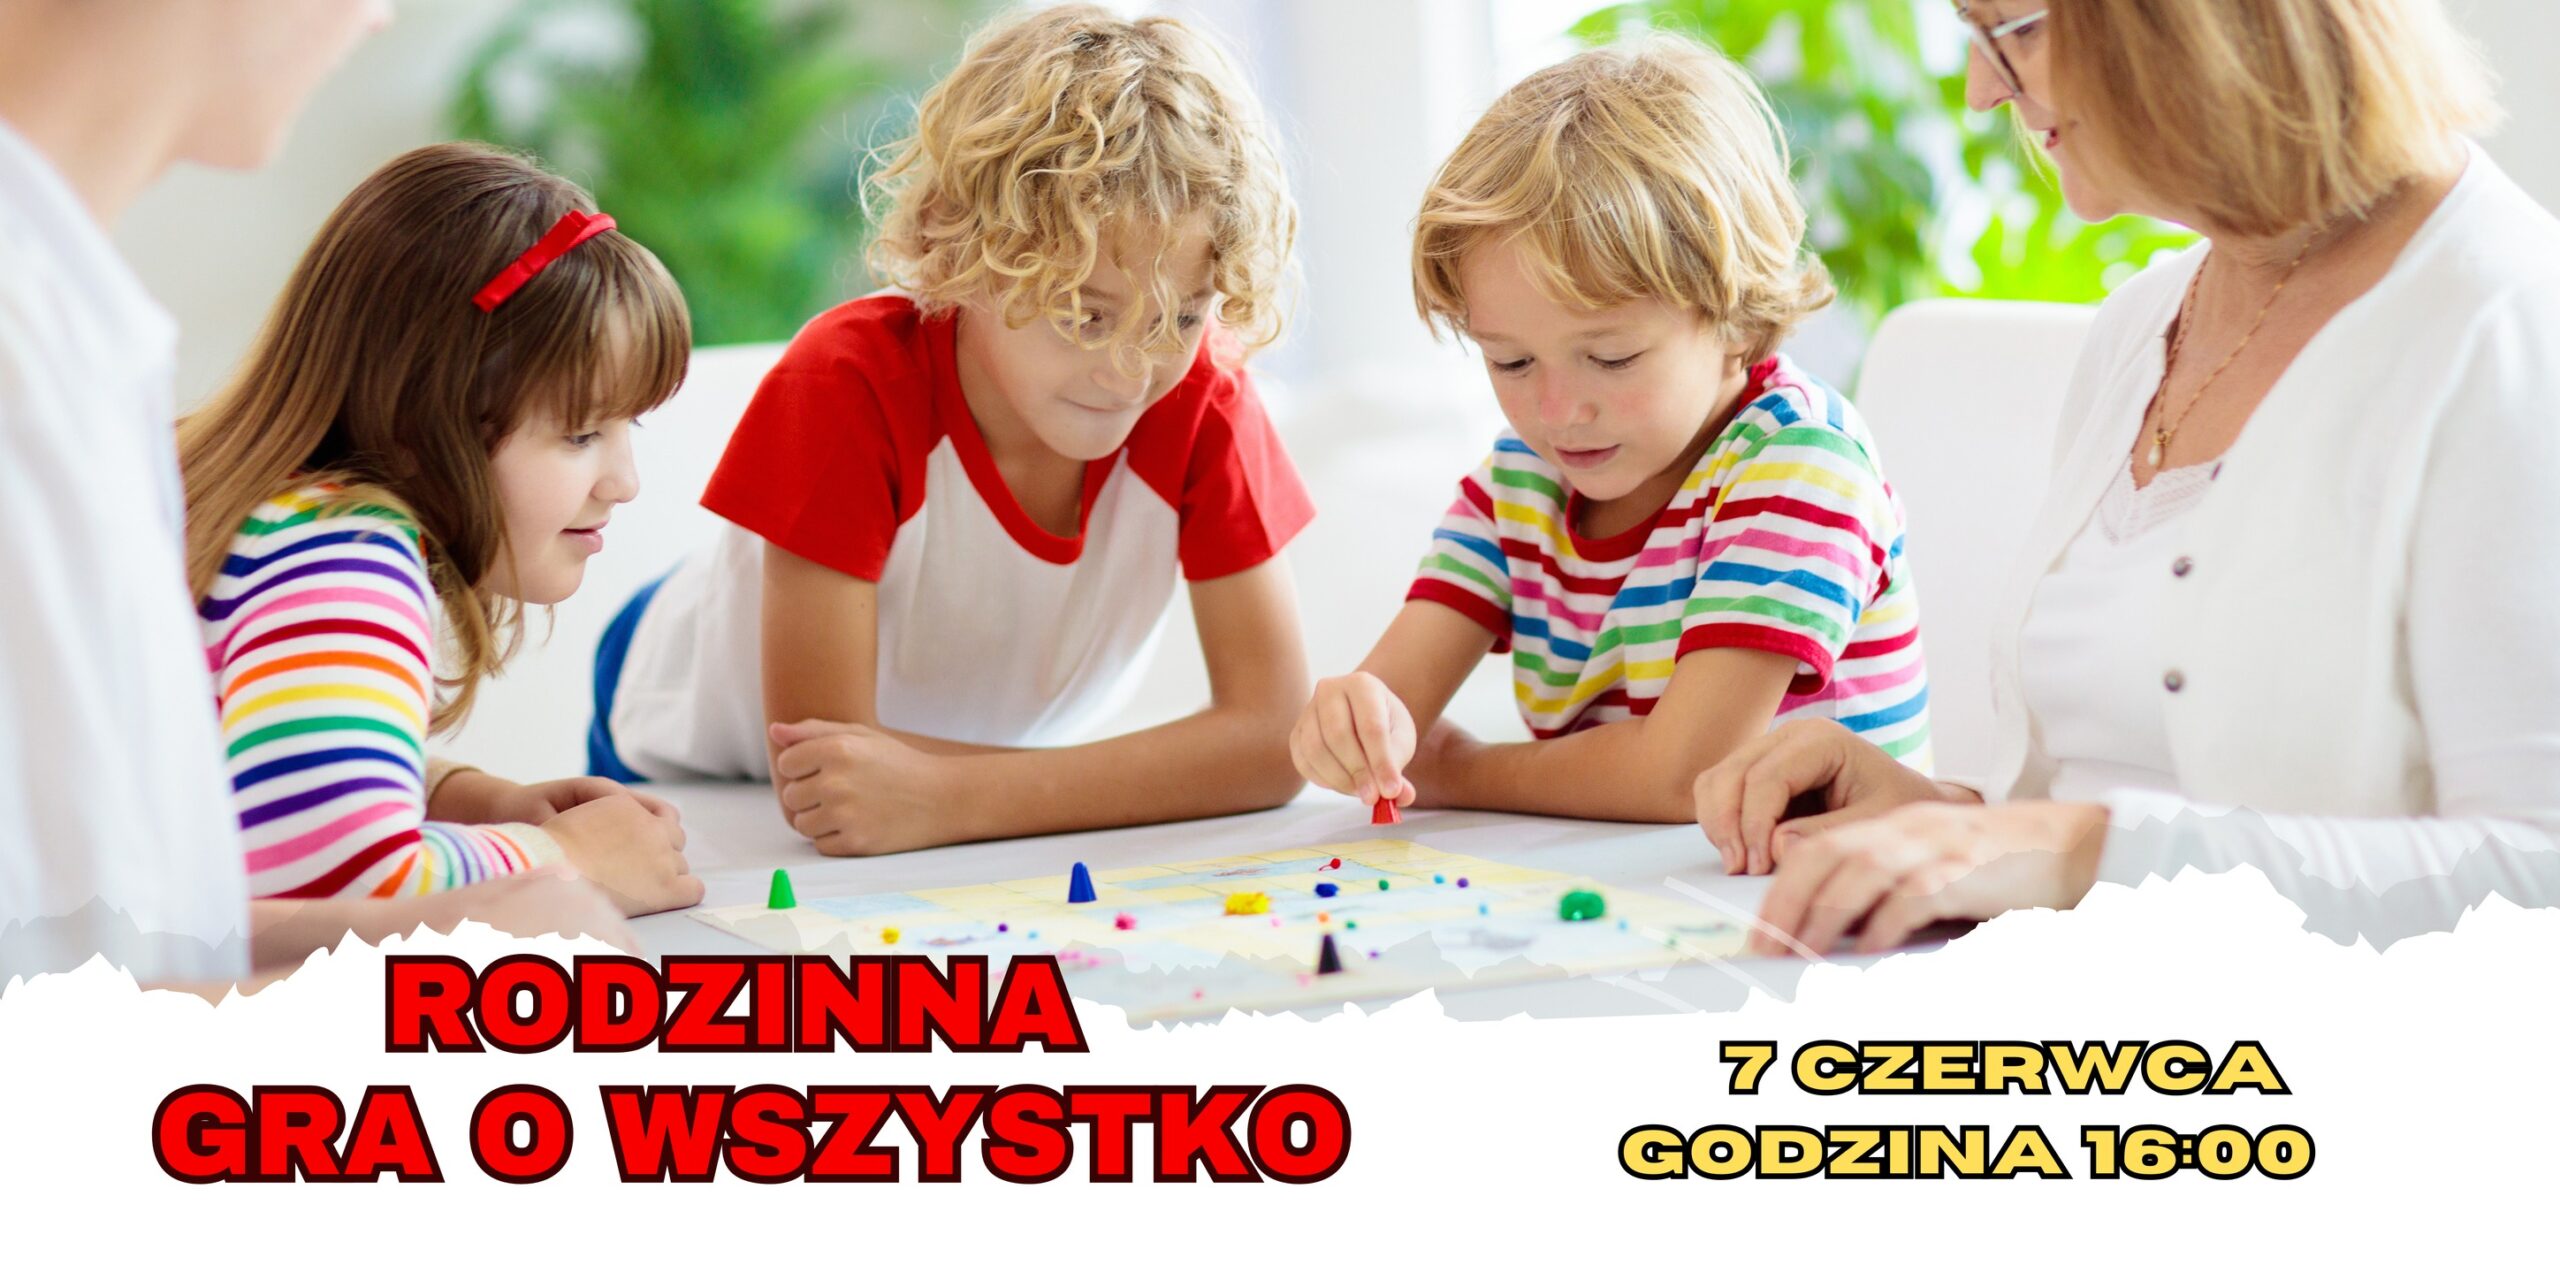 Troje uśmiechniętych dzieci oraz dwoje dorosłych gra w grę planszową